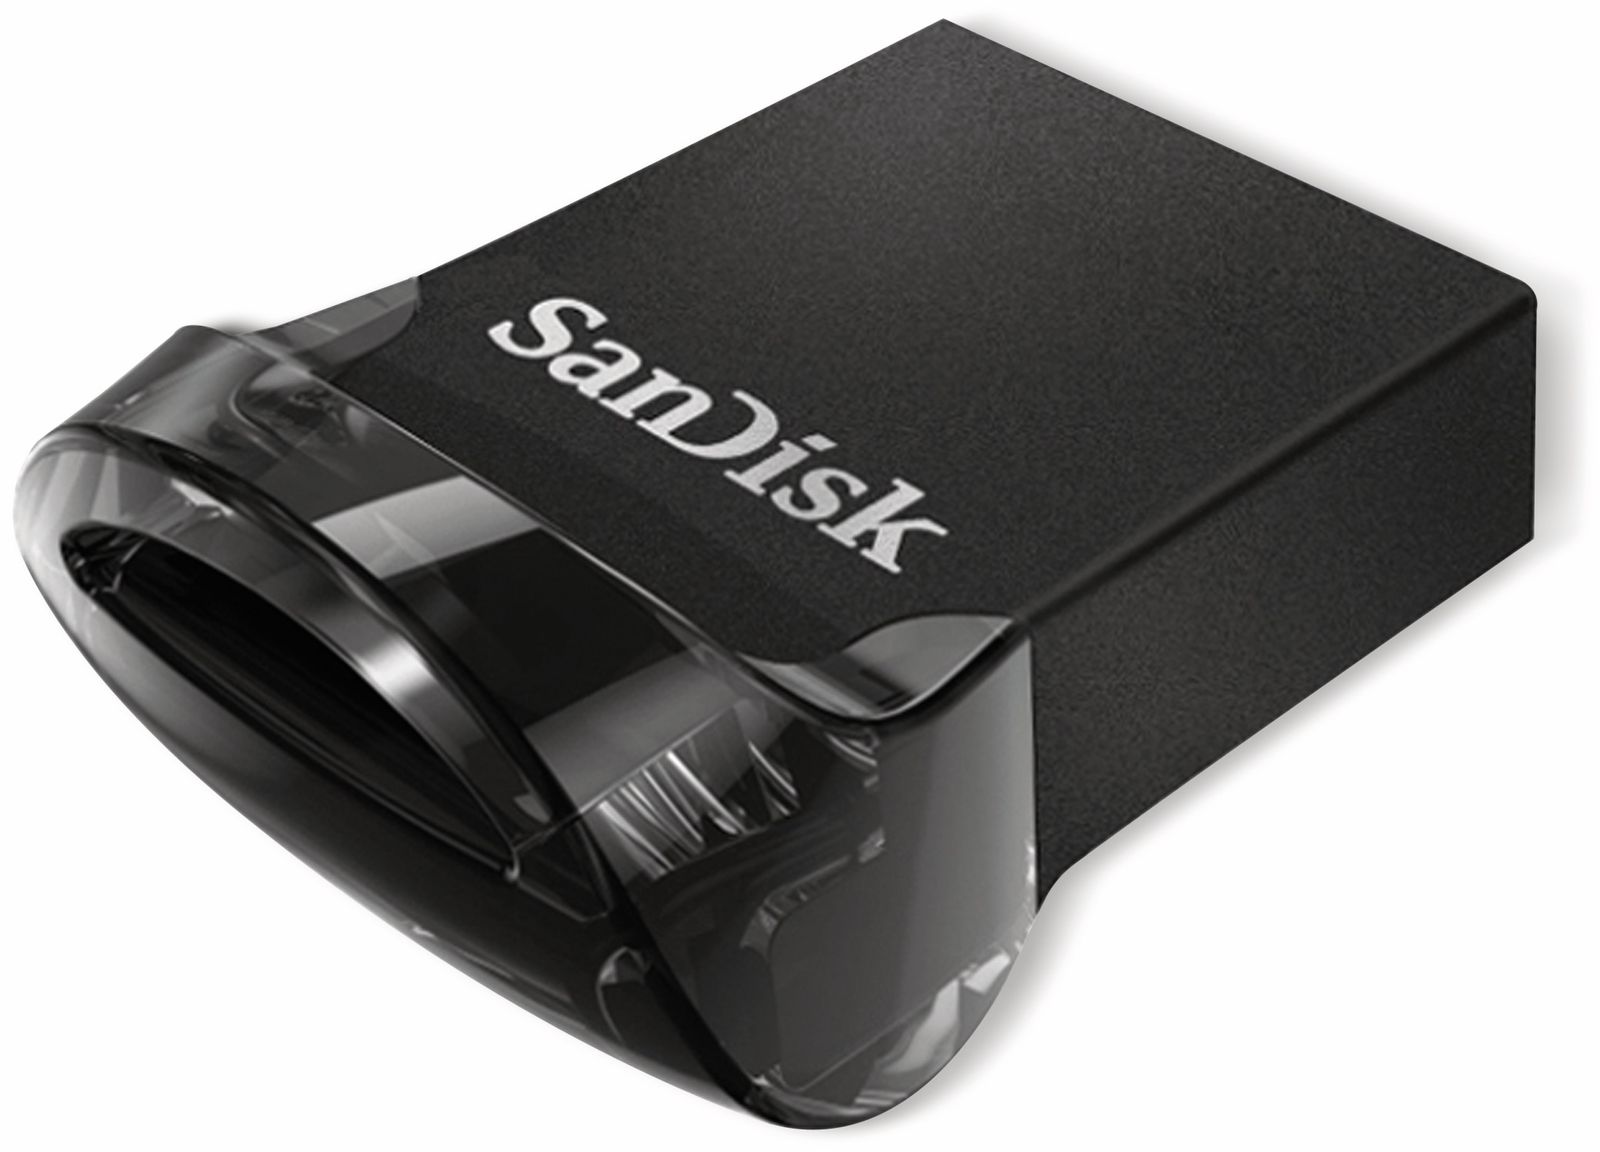 Sdcz430-256g-g46 Sandisk Ultra Fit Usb-flash-laufwerk 256gb ~d~